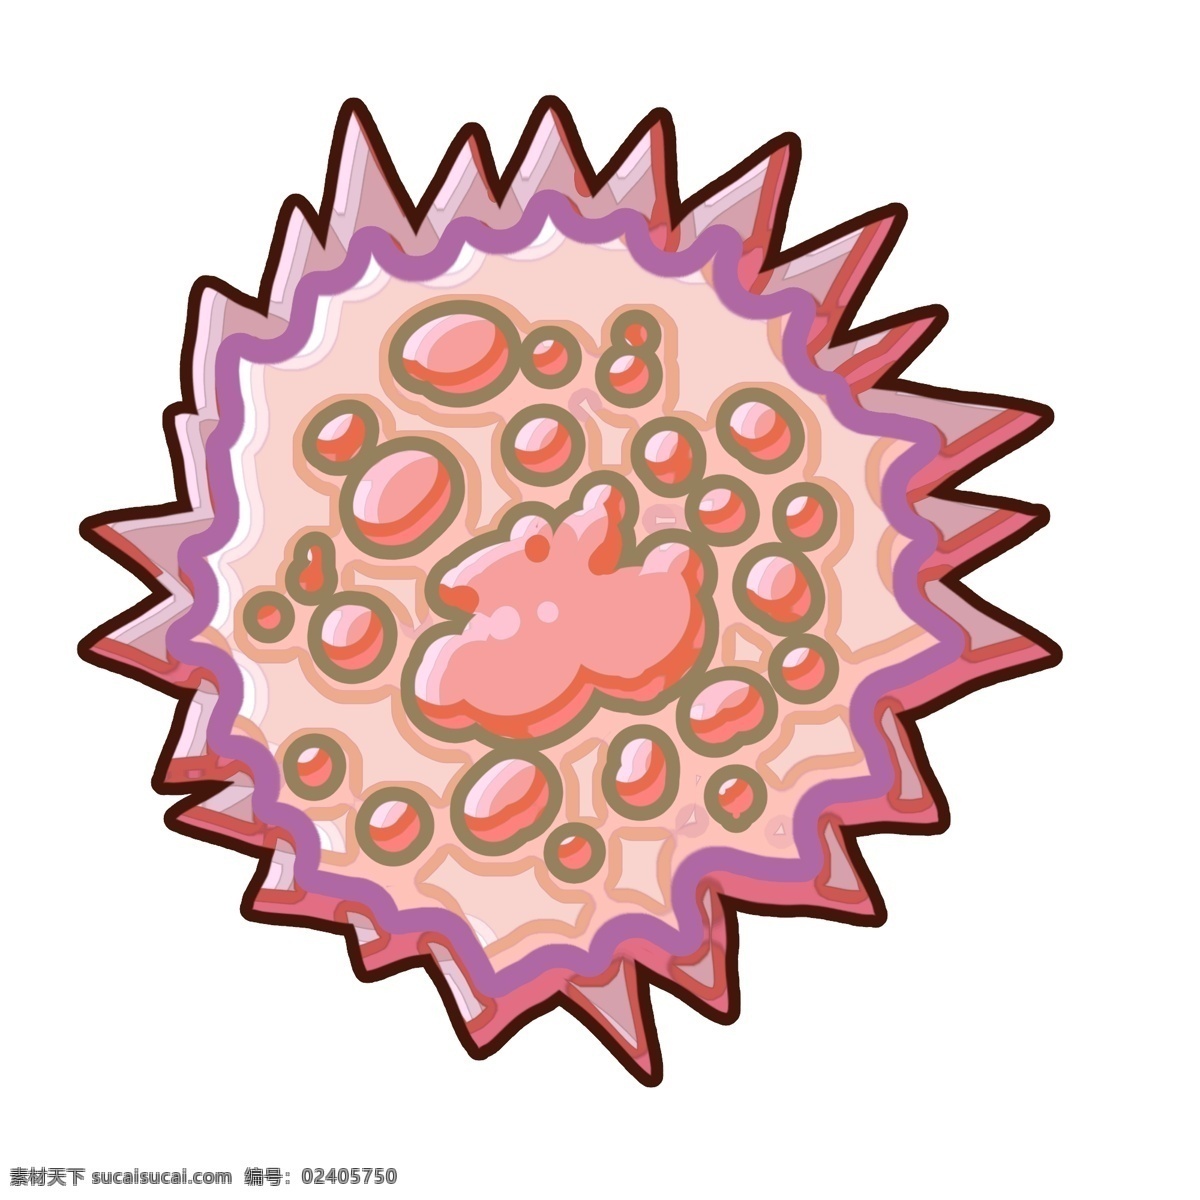 海胆 有害 细菌 插画 海胆的细菌 卡通插画 细菌插画 病菌插画 传染细菌 圆圆的细菌